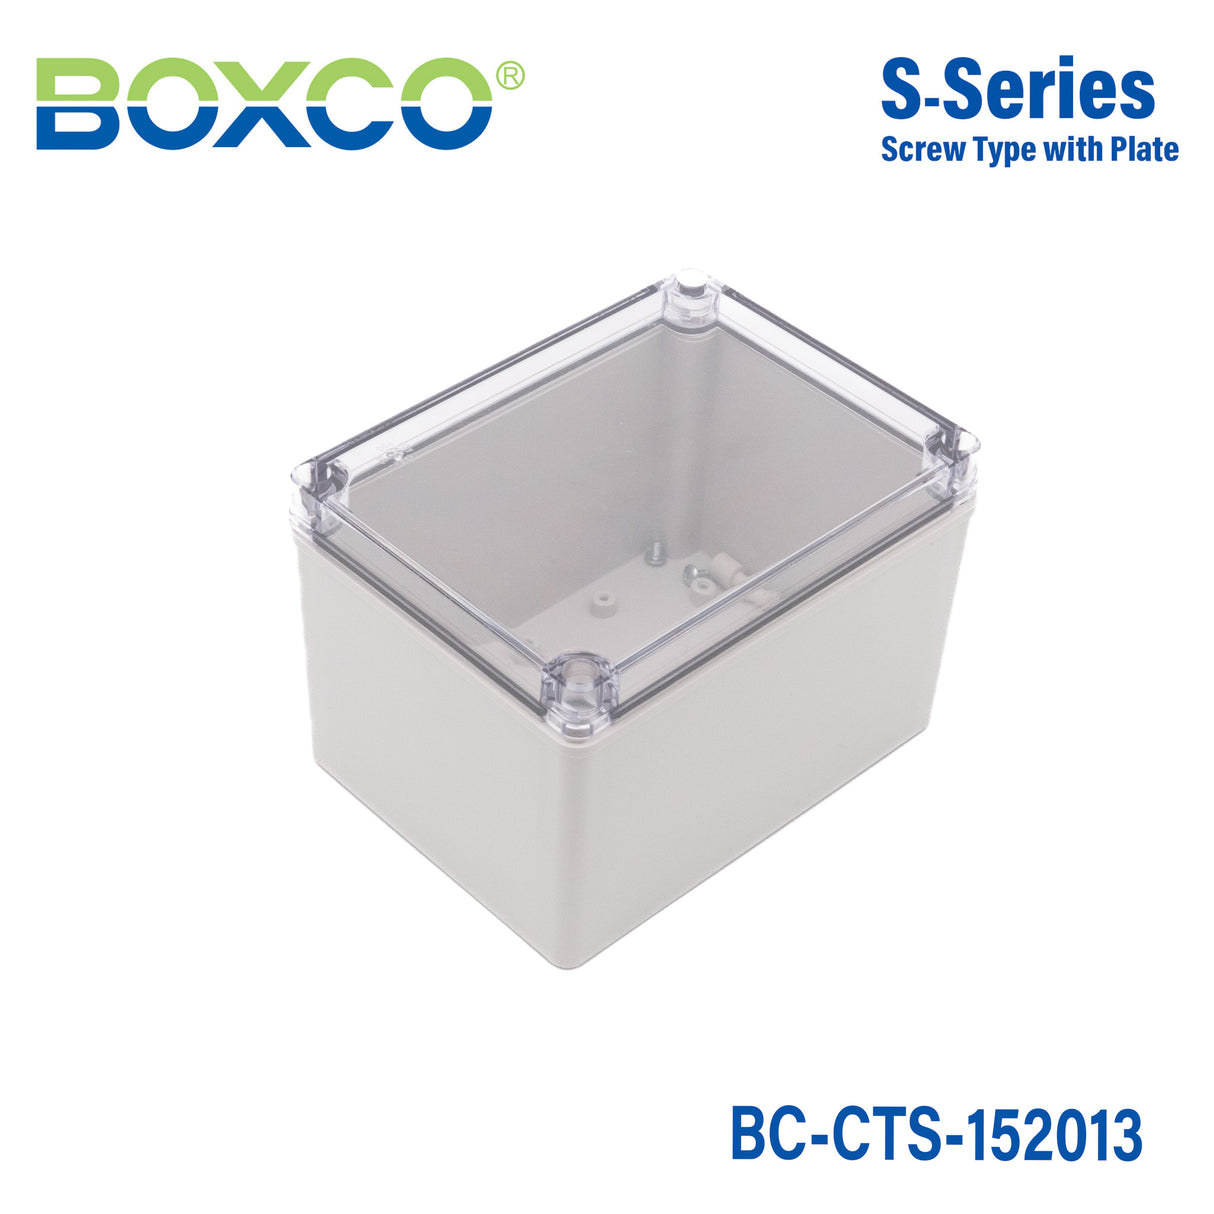 Boxco S-Series 150x200x130mm Plastic Enclosure, IP67, IK08, PC, Transparent Cover, Screw Type